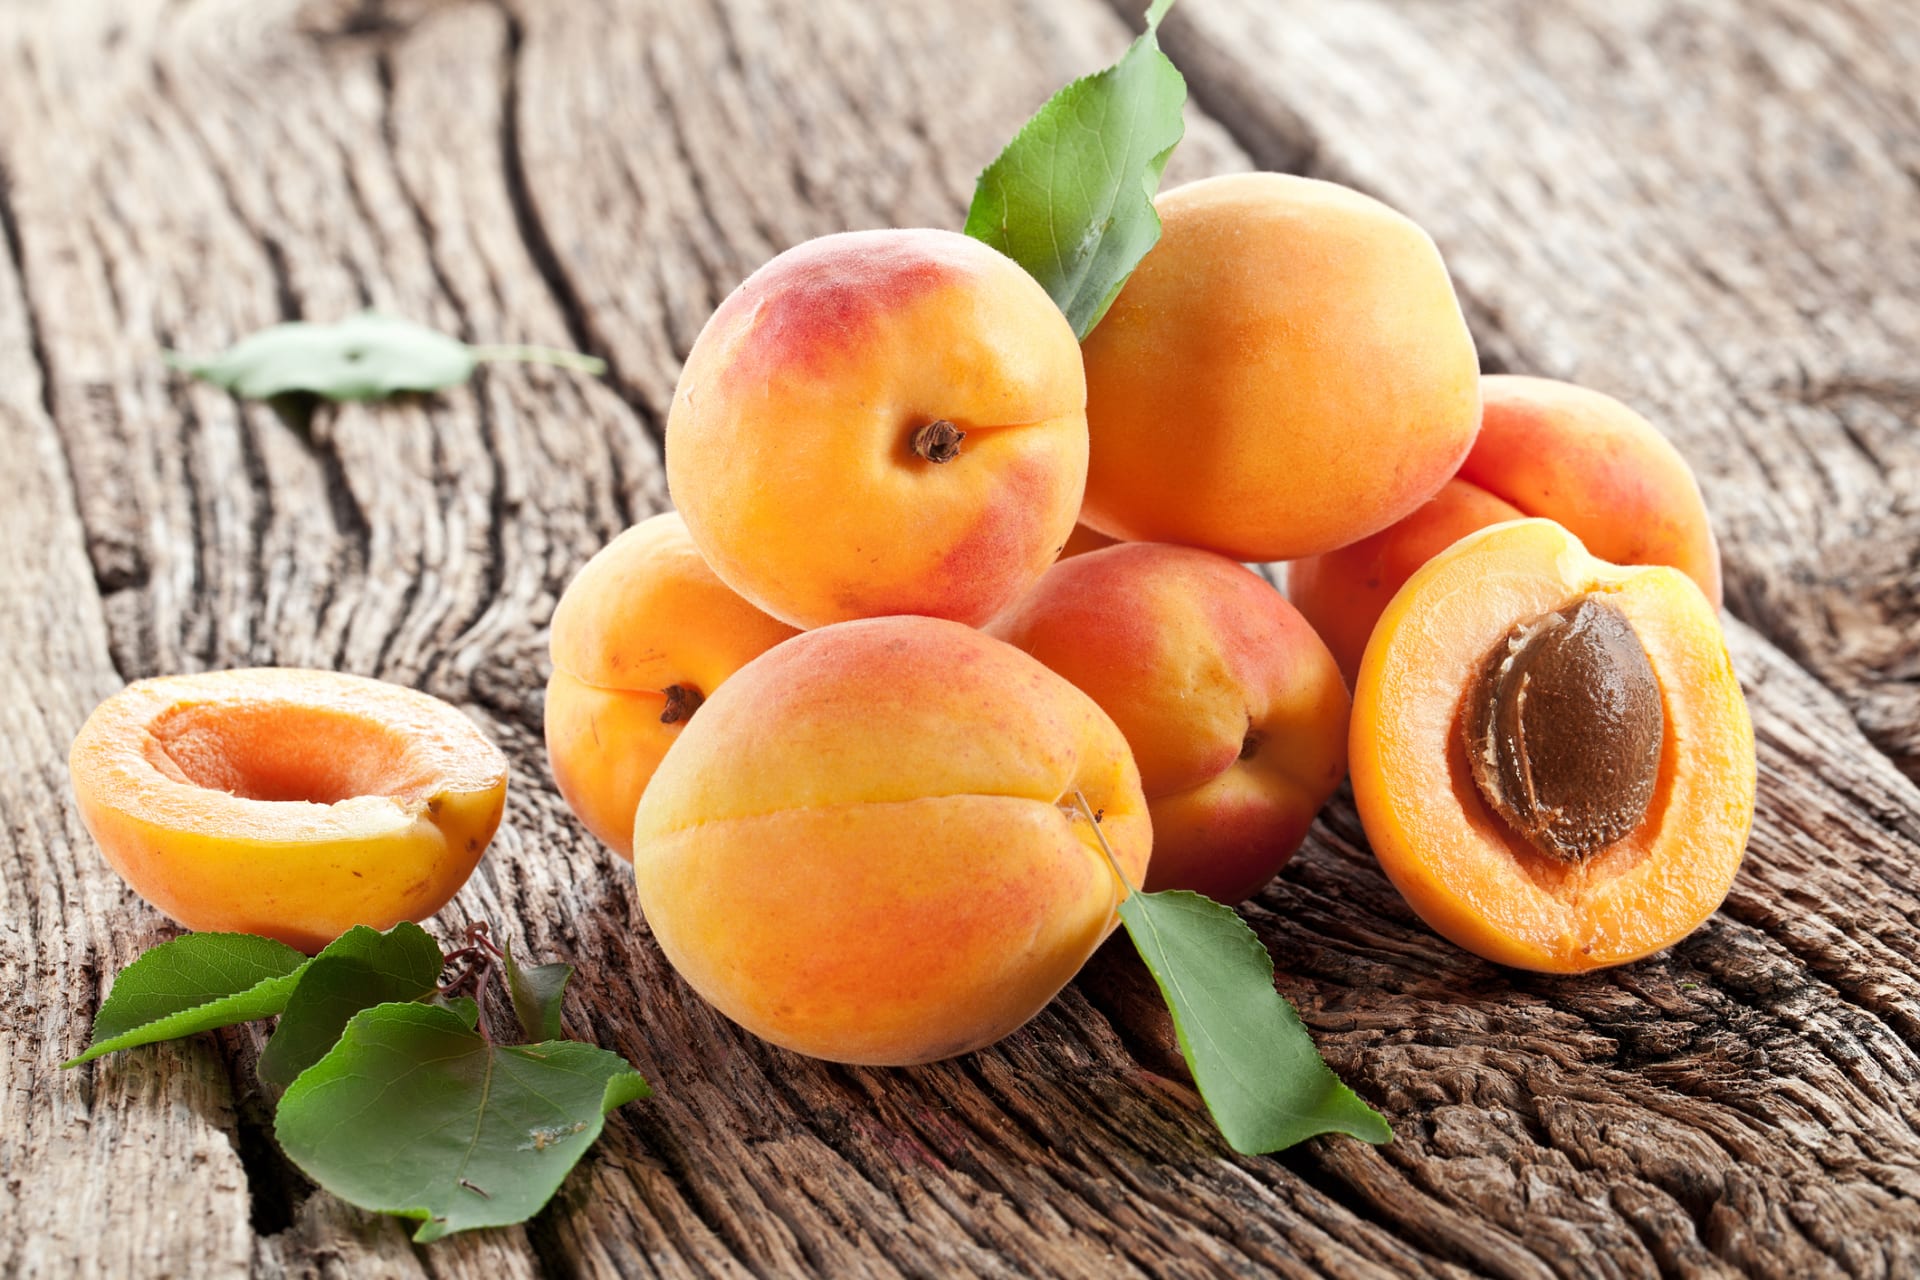 Dozrávají meruňky! Jaké skvělé účinky mají na vaše zdraví?